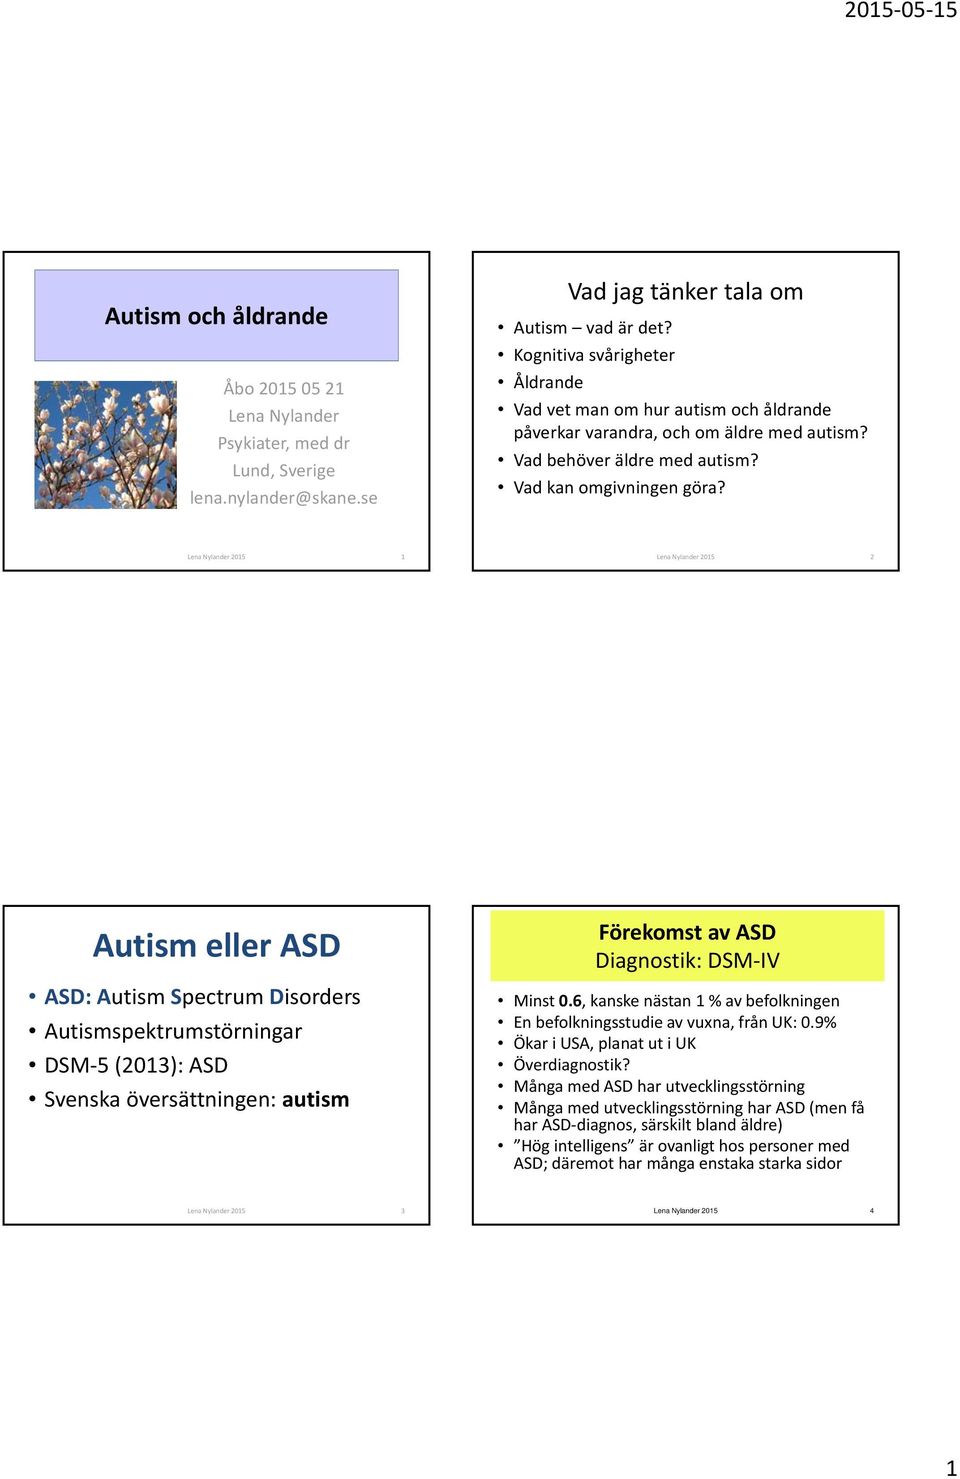 Lena Nylander 2015 1 Lena Nylander 2015 2 Autism eller ASD ASD: Autism Spectrum Disorders Autismspektrumstörningar DSM 5 (2013): ASD Svenska översättningen: autism Förekomst av ASD Diagnostik: DSM IV